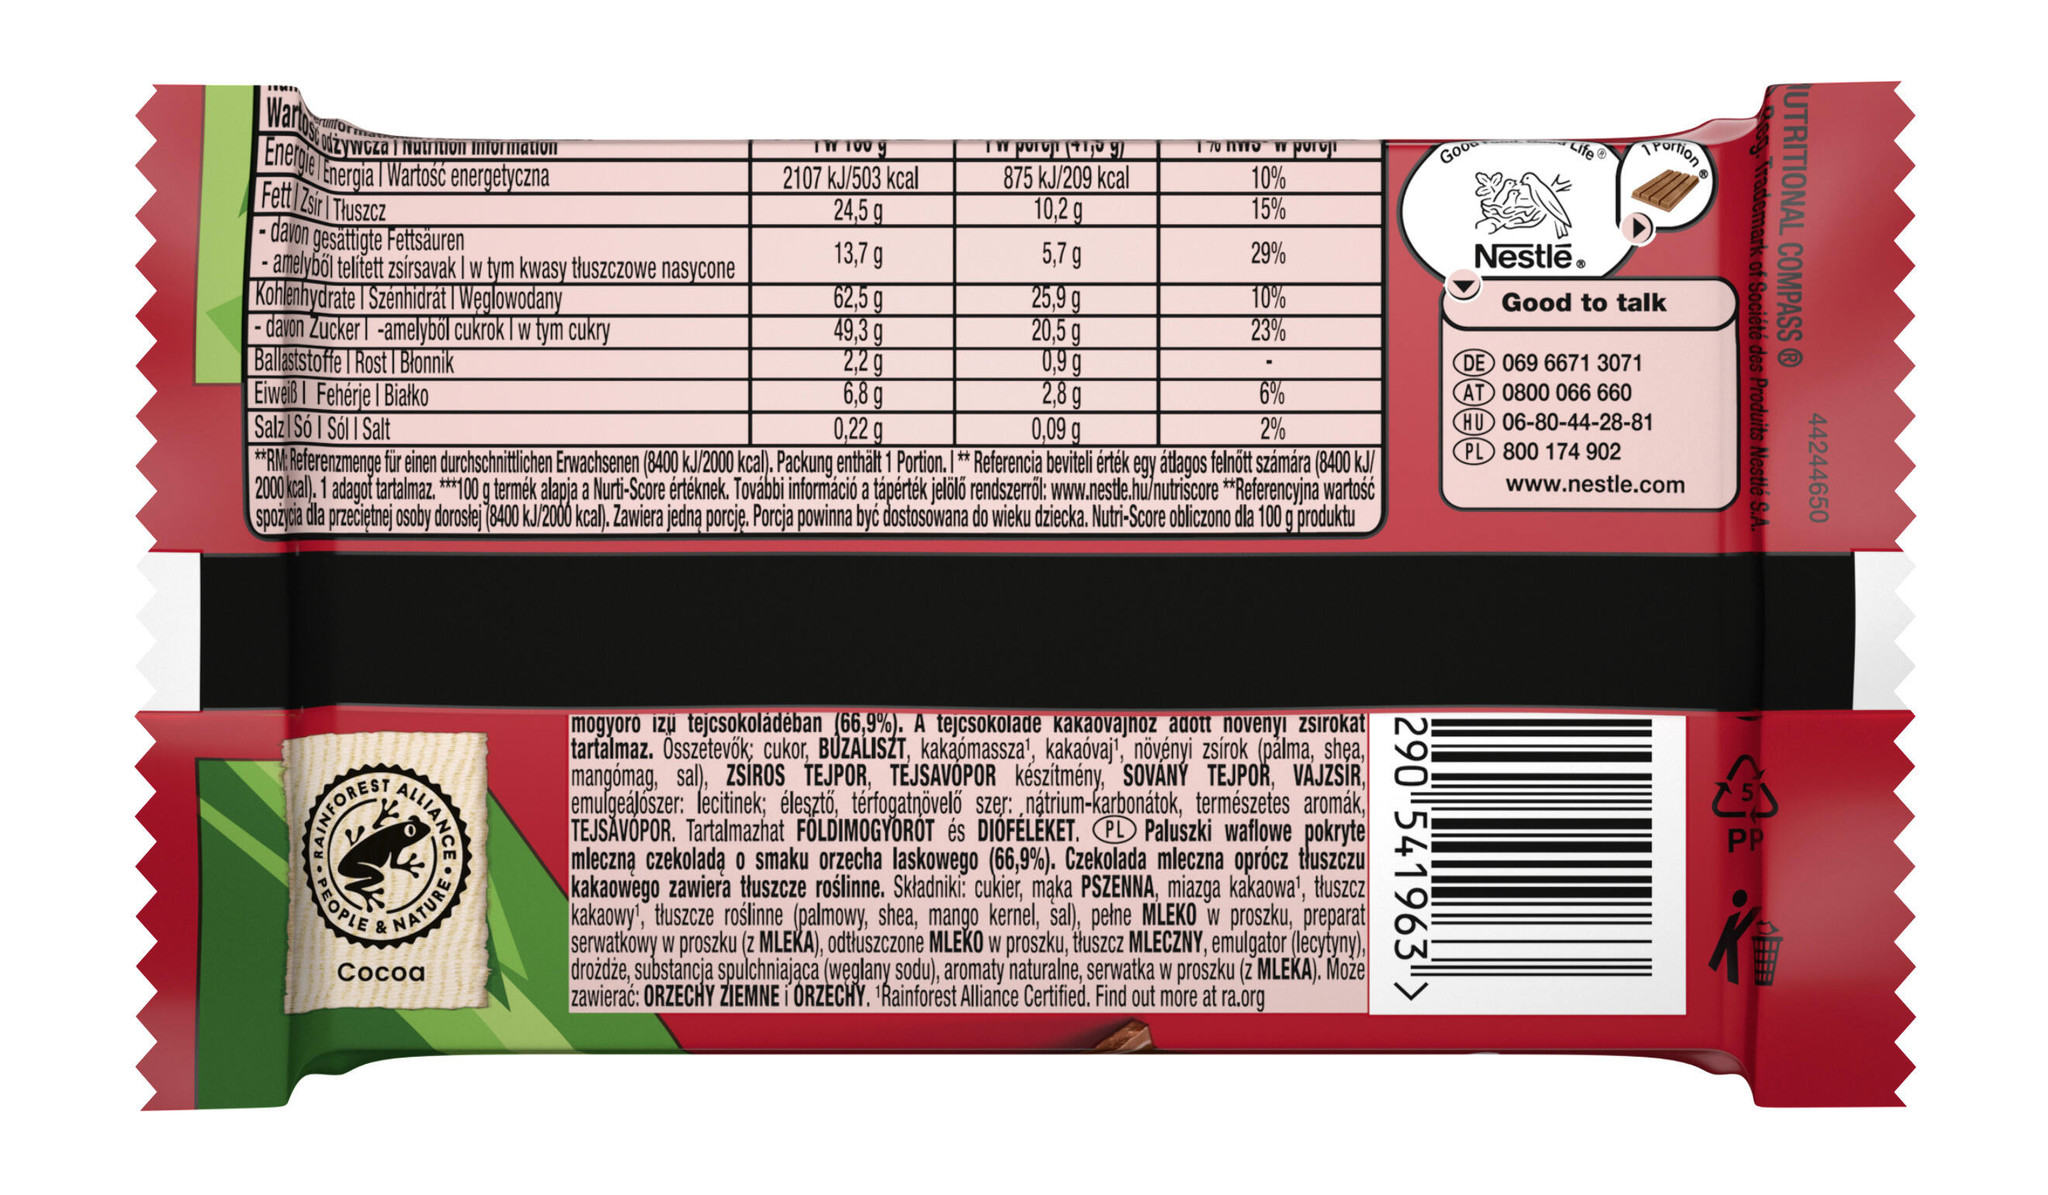 KitKat Hazelnut 24 x 41,5g